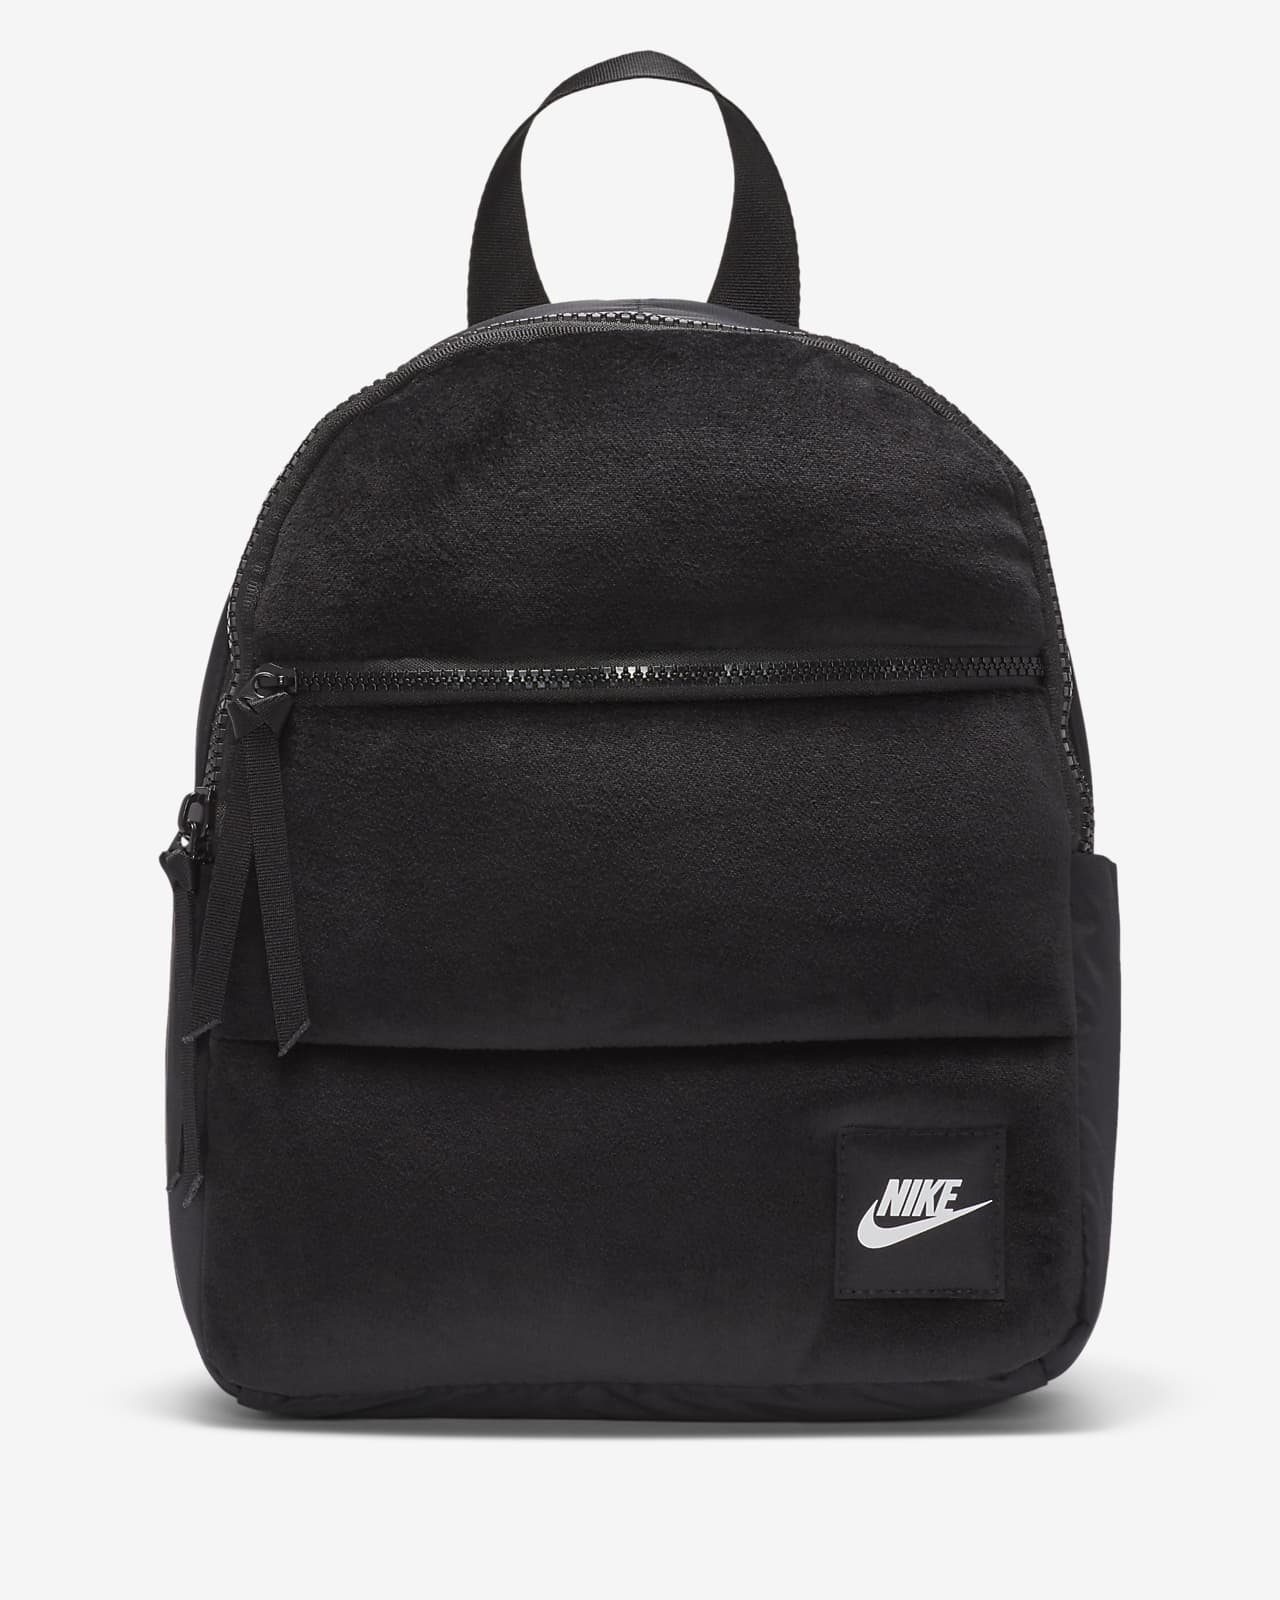 nike mini backpack size